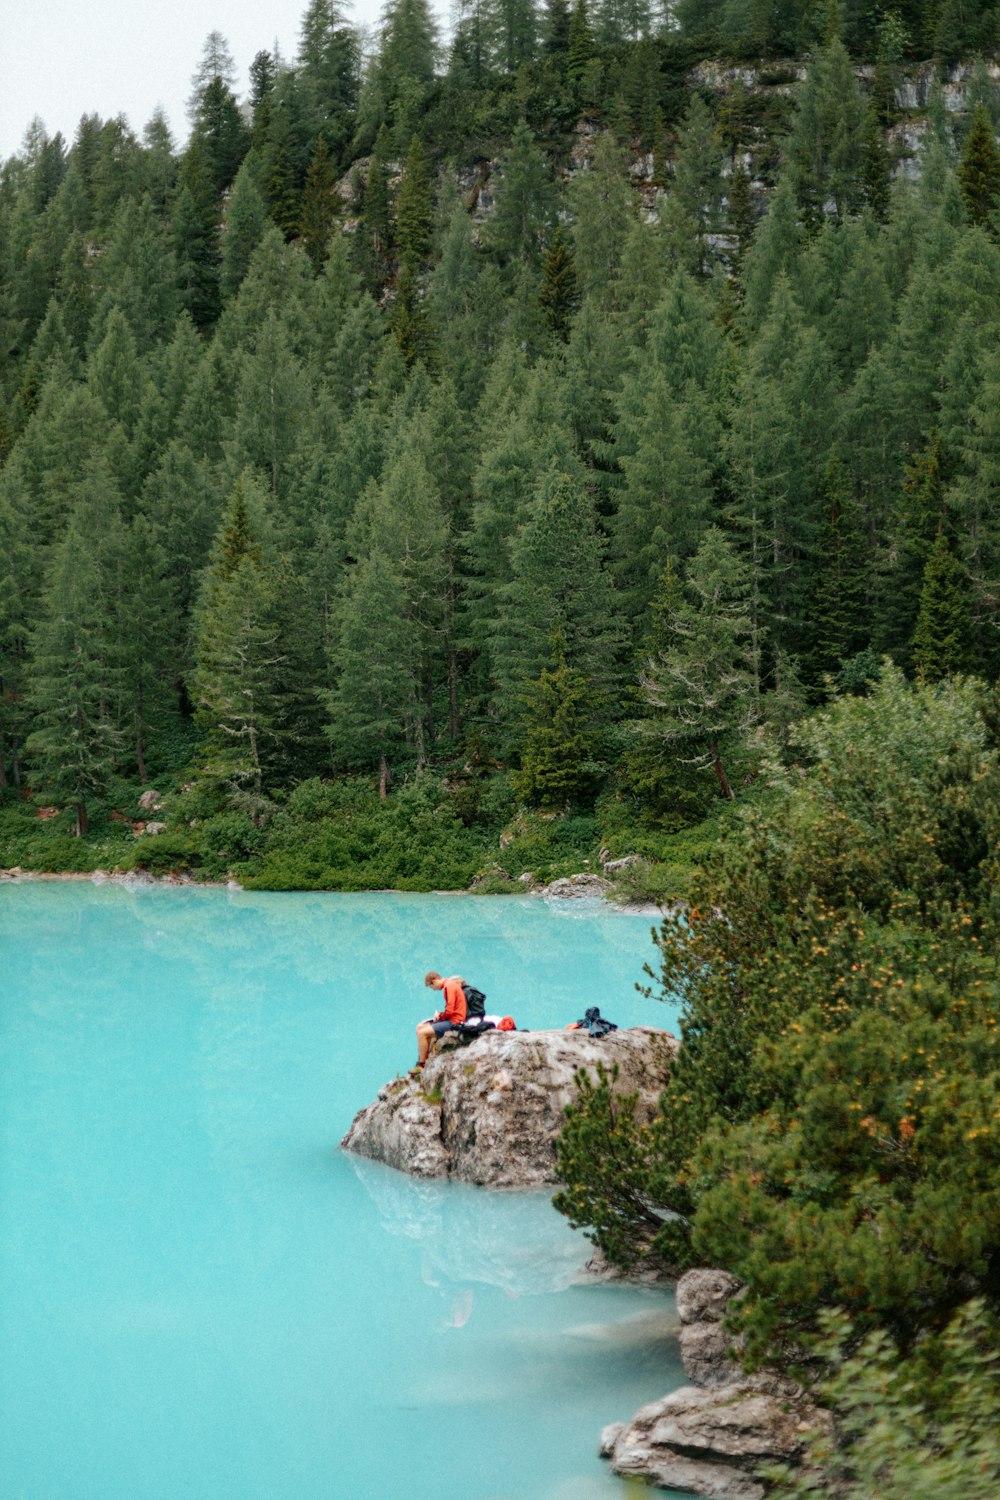 Un grupo de personas sentadas en una roca en medio de un lago